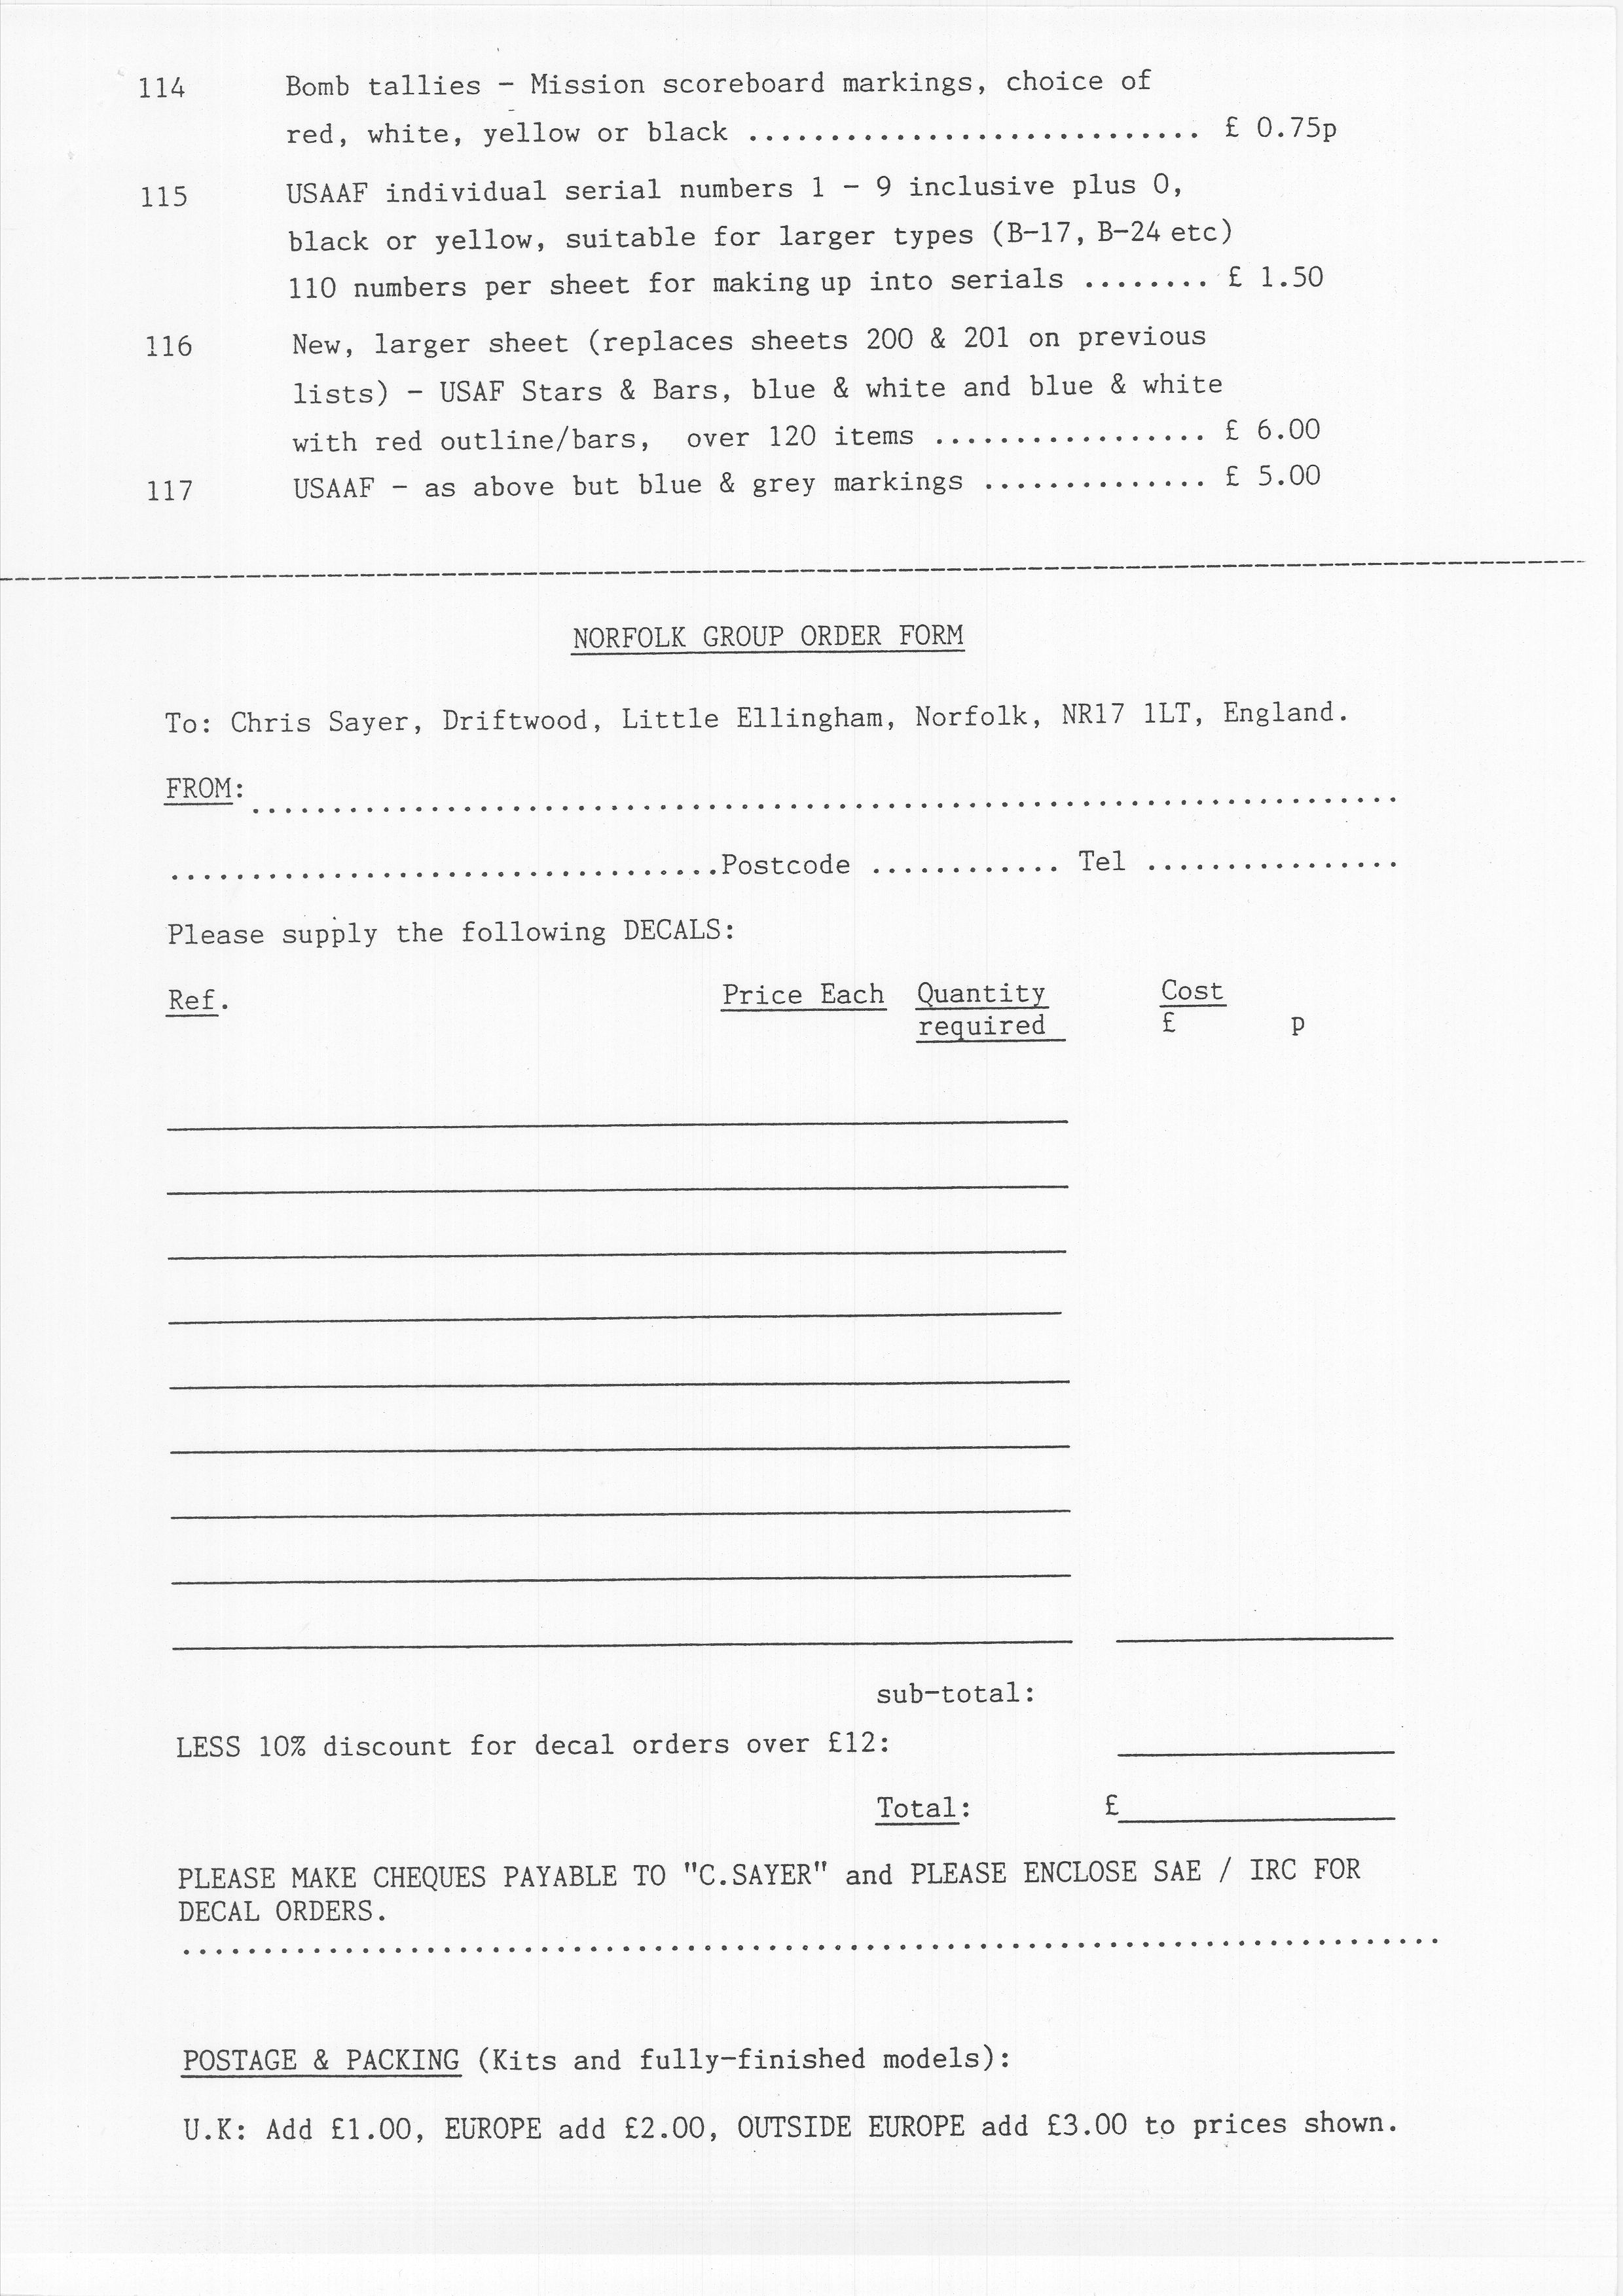 Norfolk Group_Newsletter No.4_November 199315.jpg